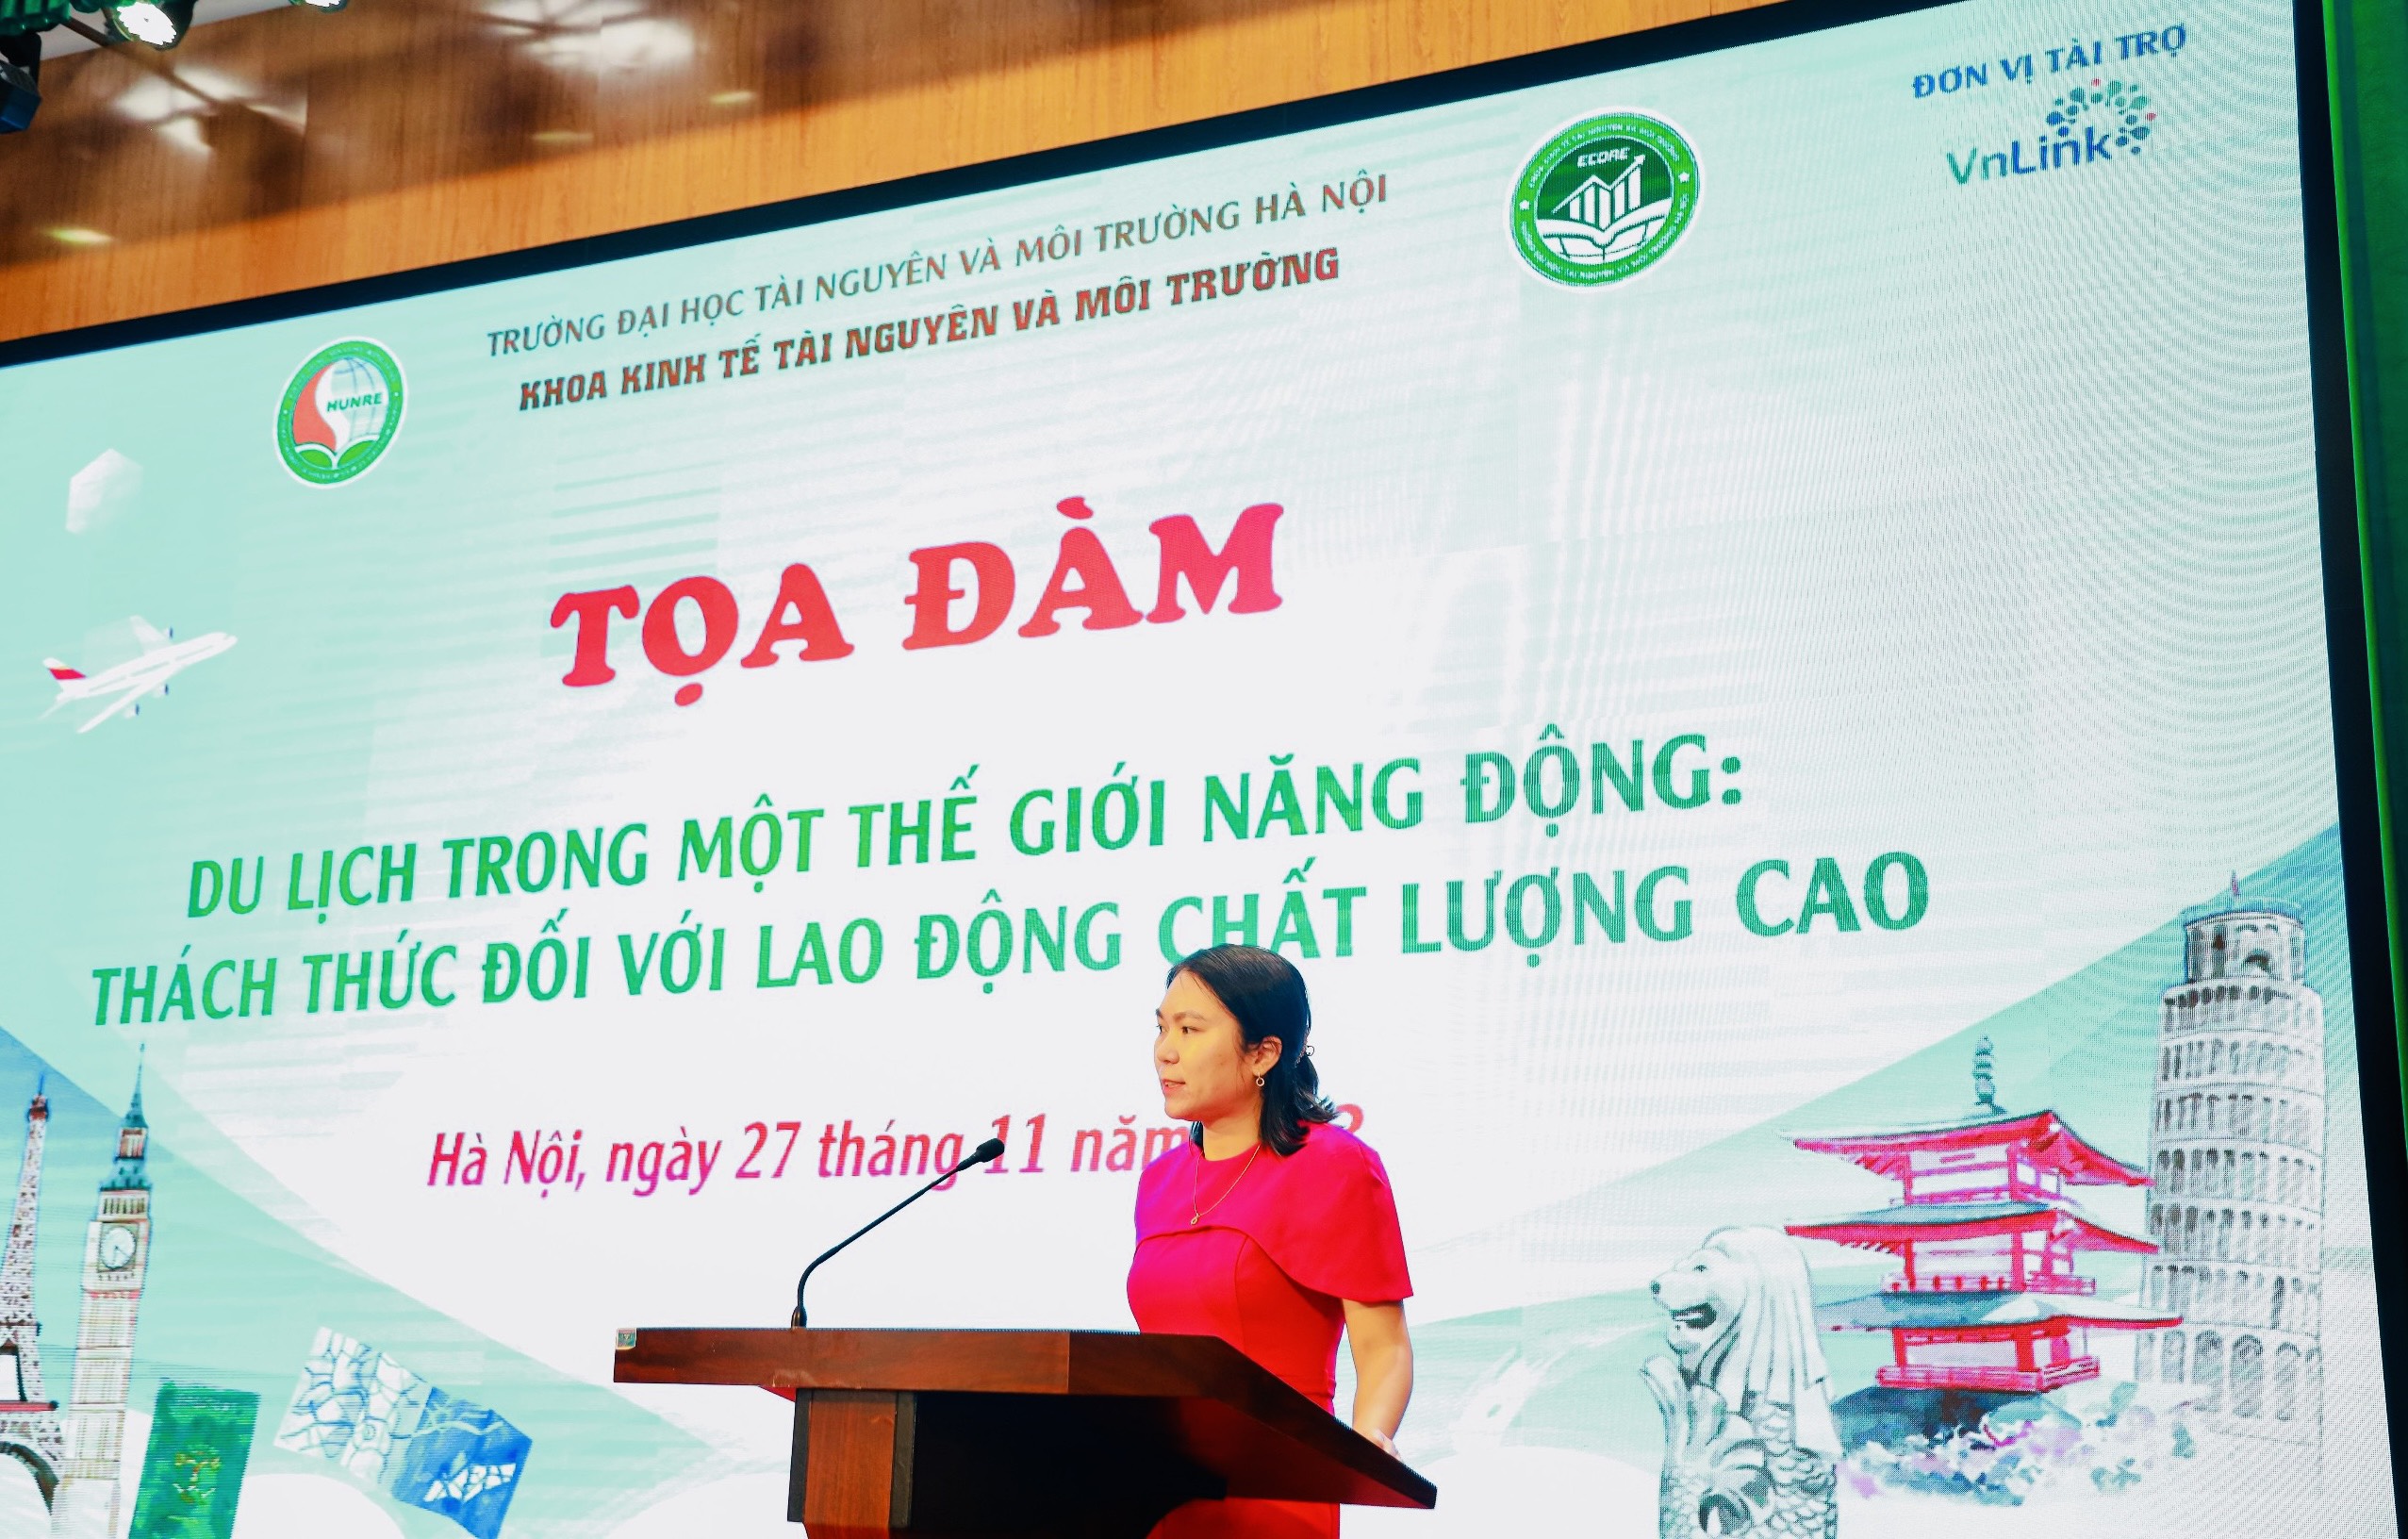 ThS. Nguyễn Thị Thanh Mai, Phó Trưởng khoa Khoa Kinh tế Tài nguyên và Môi trường phát biểu tại Tọa đàm.